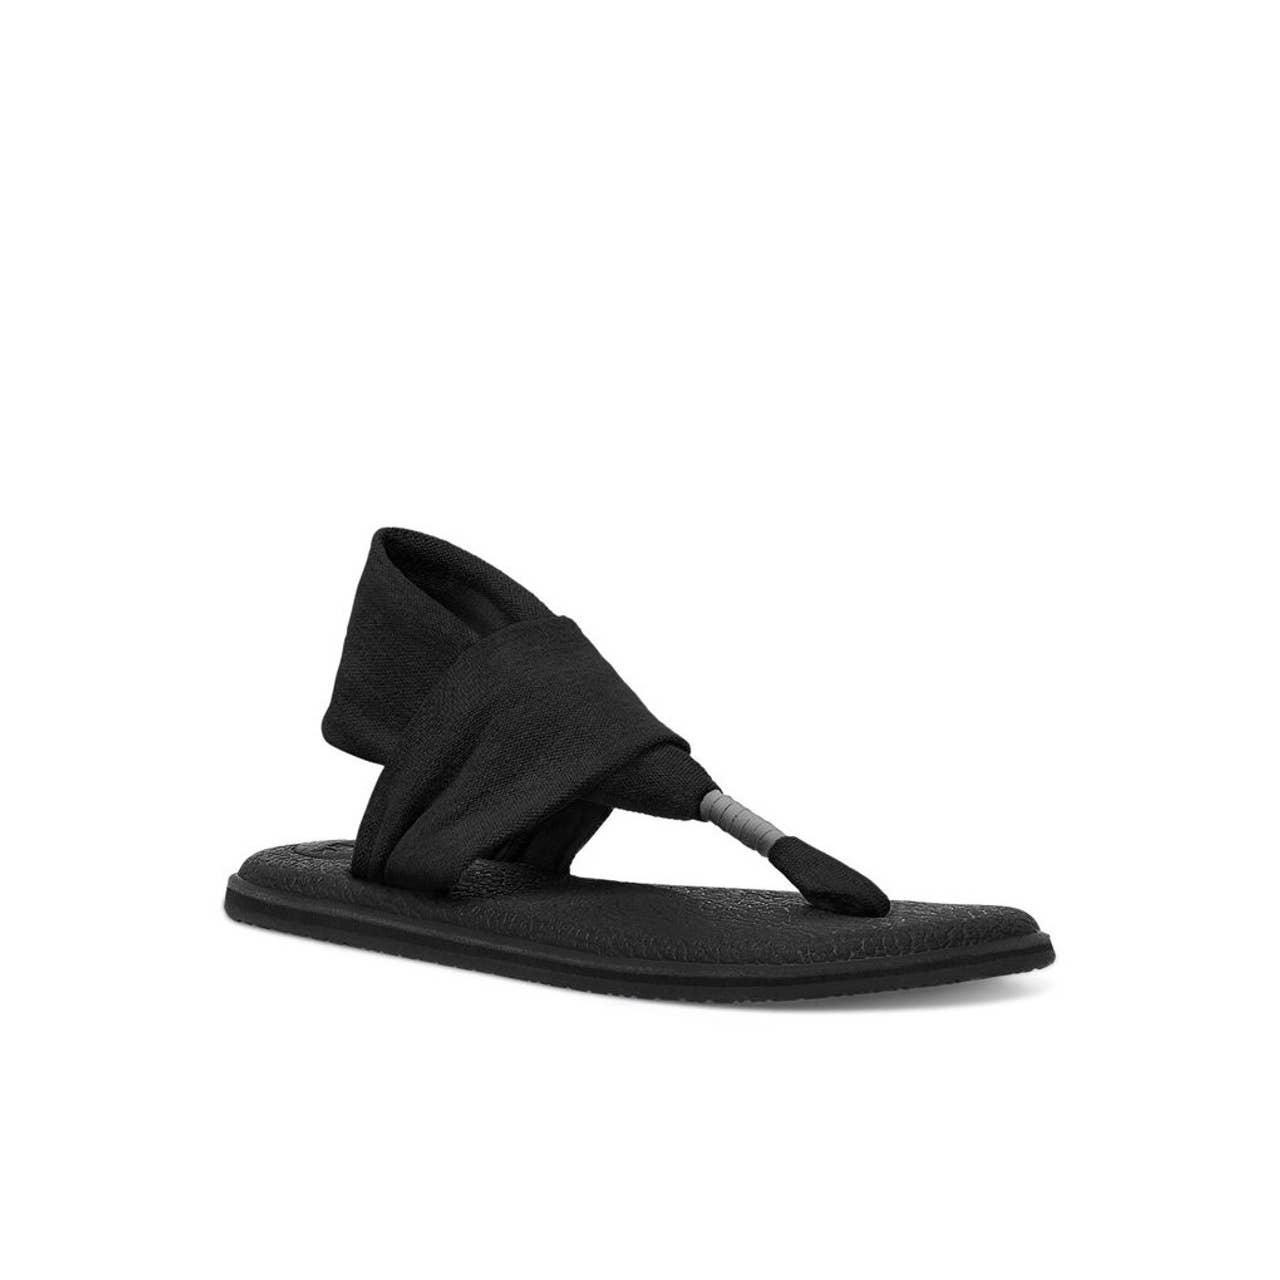 Sanuk Women's Yoga Sling 2 Sandal in Black. Size 8. - Depop